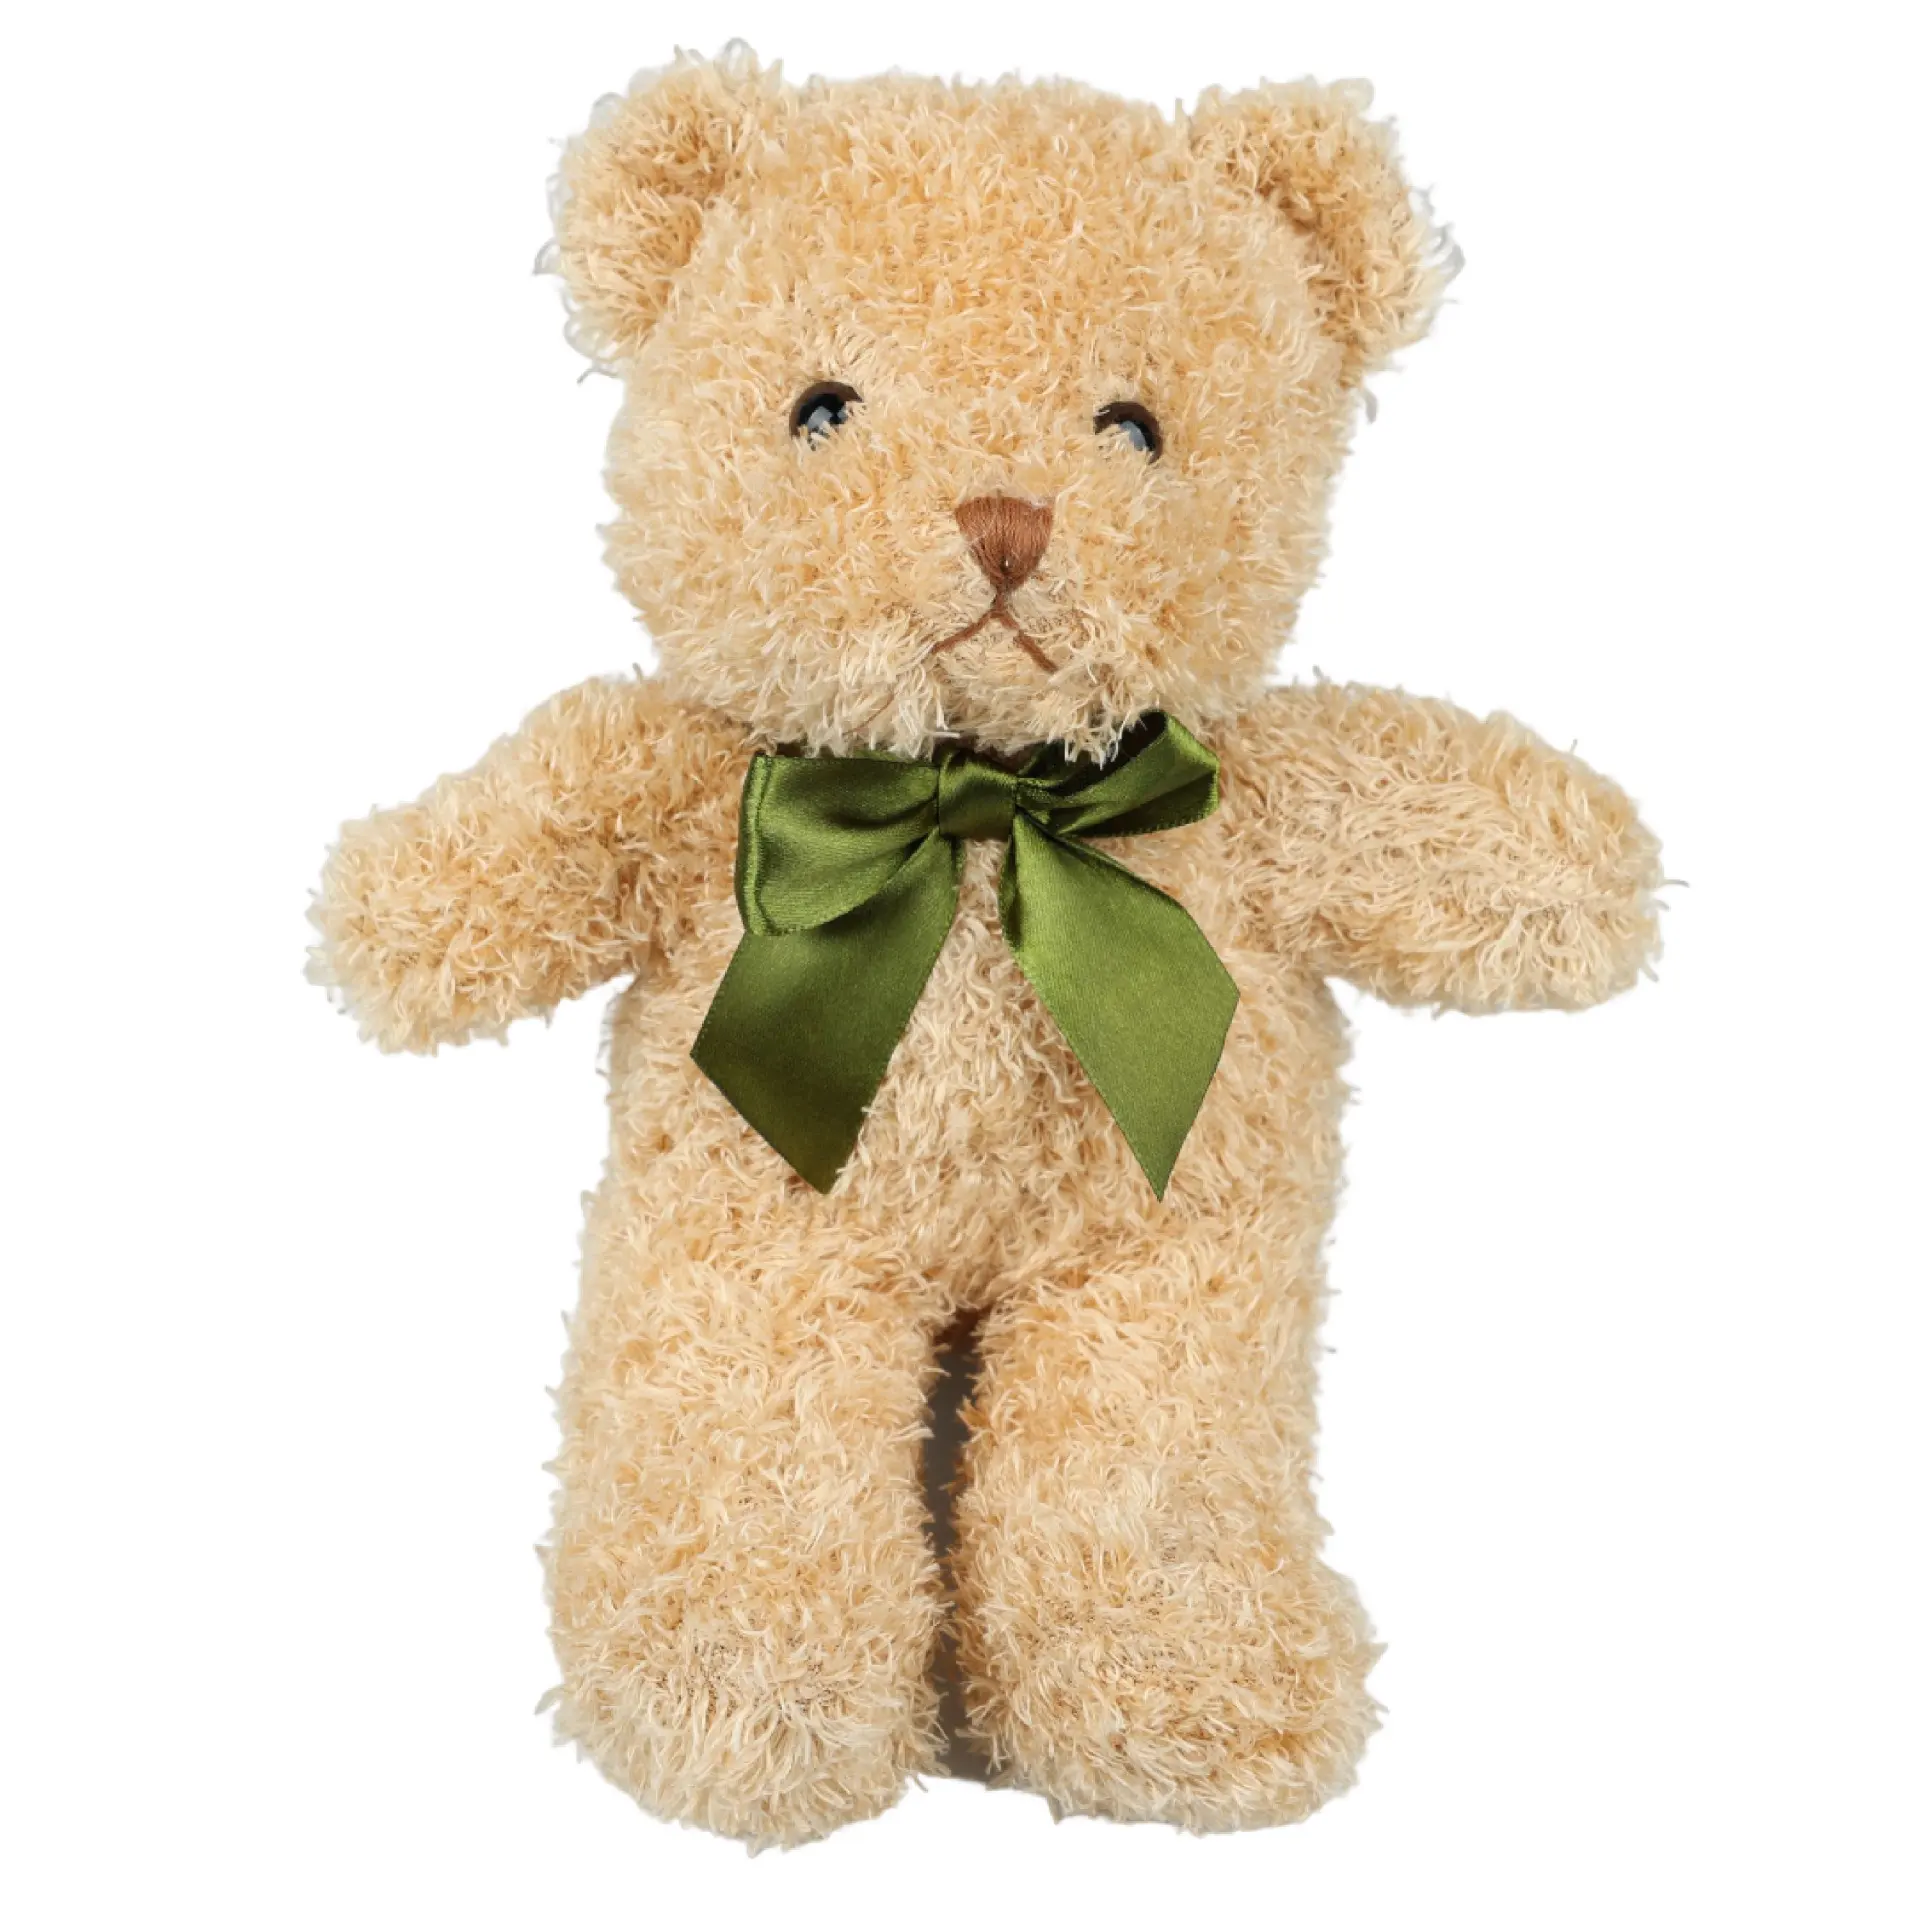 ODM оптовая продажа плюшевая игрушка медведь классическая игрушка Juguetes милая собака мягкие плюшевые детские игрушки